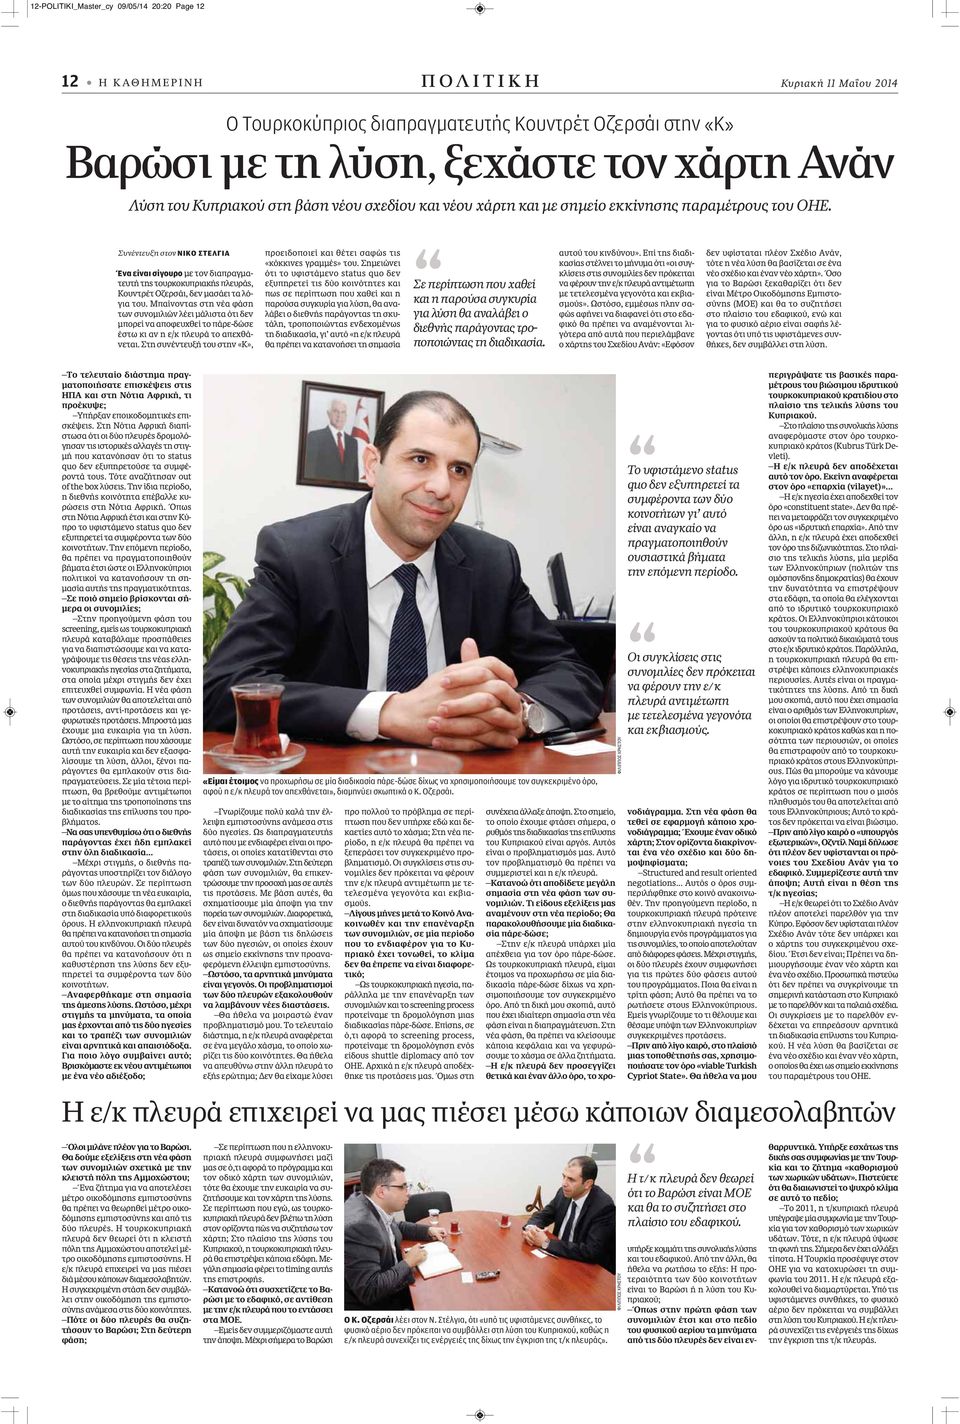 Συνέντευξη στον ΝΙΚΟ ΣΤΕΛΓΙΑ Ένα είναι σίγουρο με τον διαπραγματευτή της τουρκοκυπριακής πλευράς, Κουντρέτ Οζερσάι, δεν μασάει τα λόγια του.